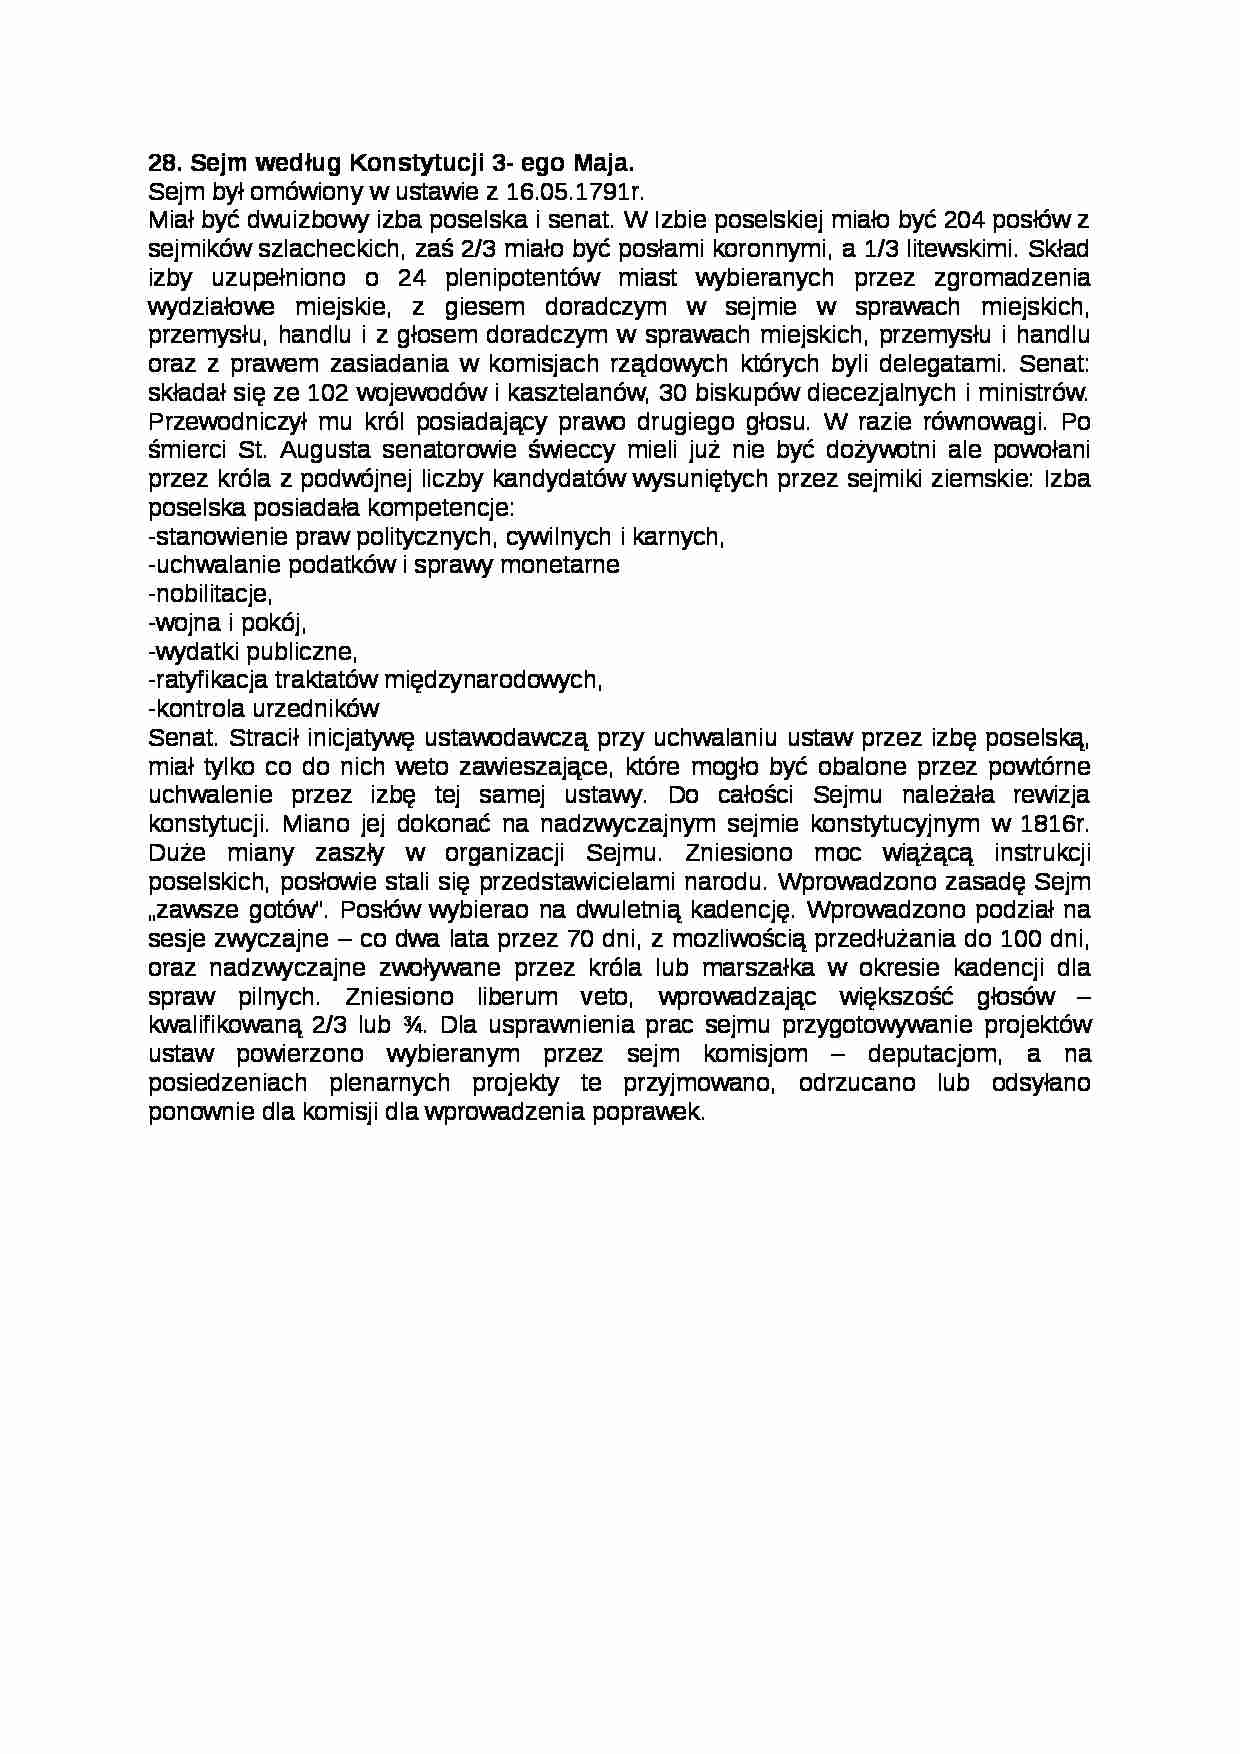 Sejm według Konstytucji 3- ego Maja - strona 1